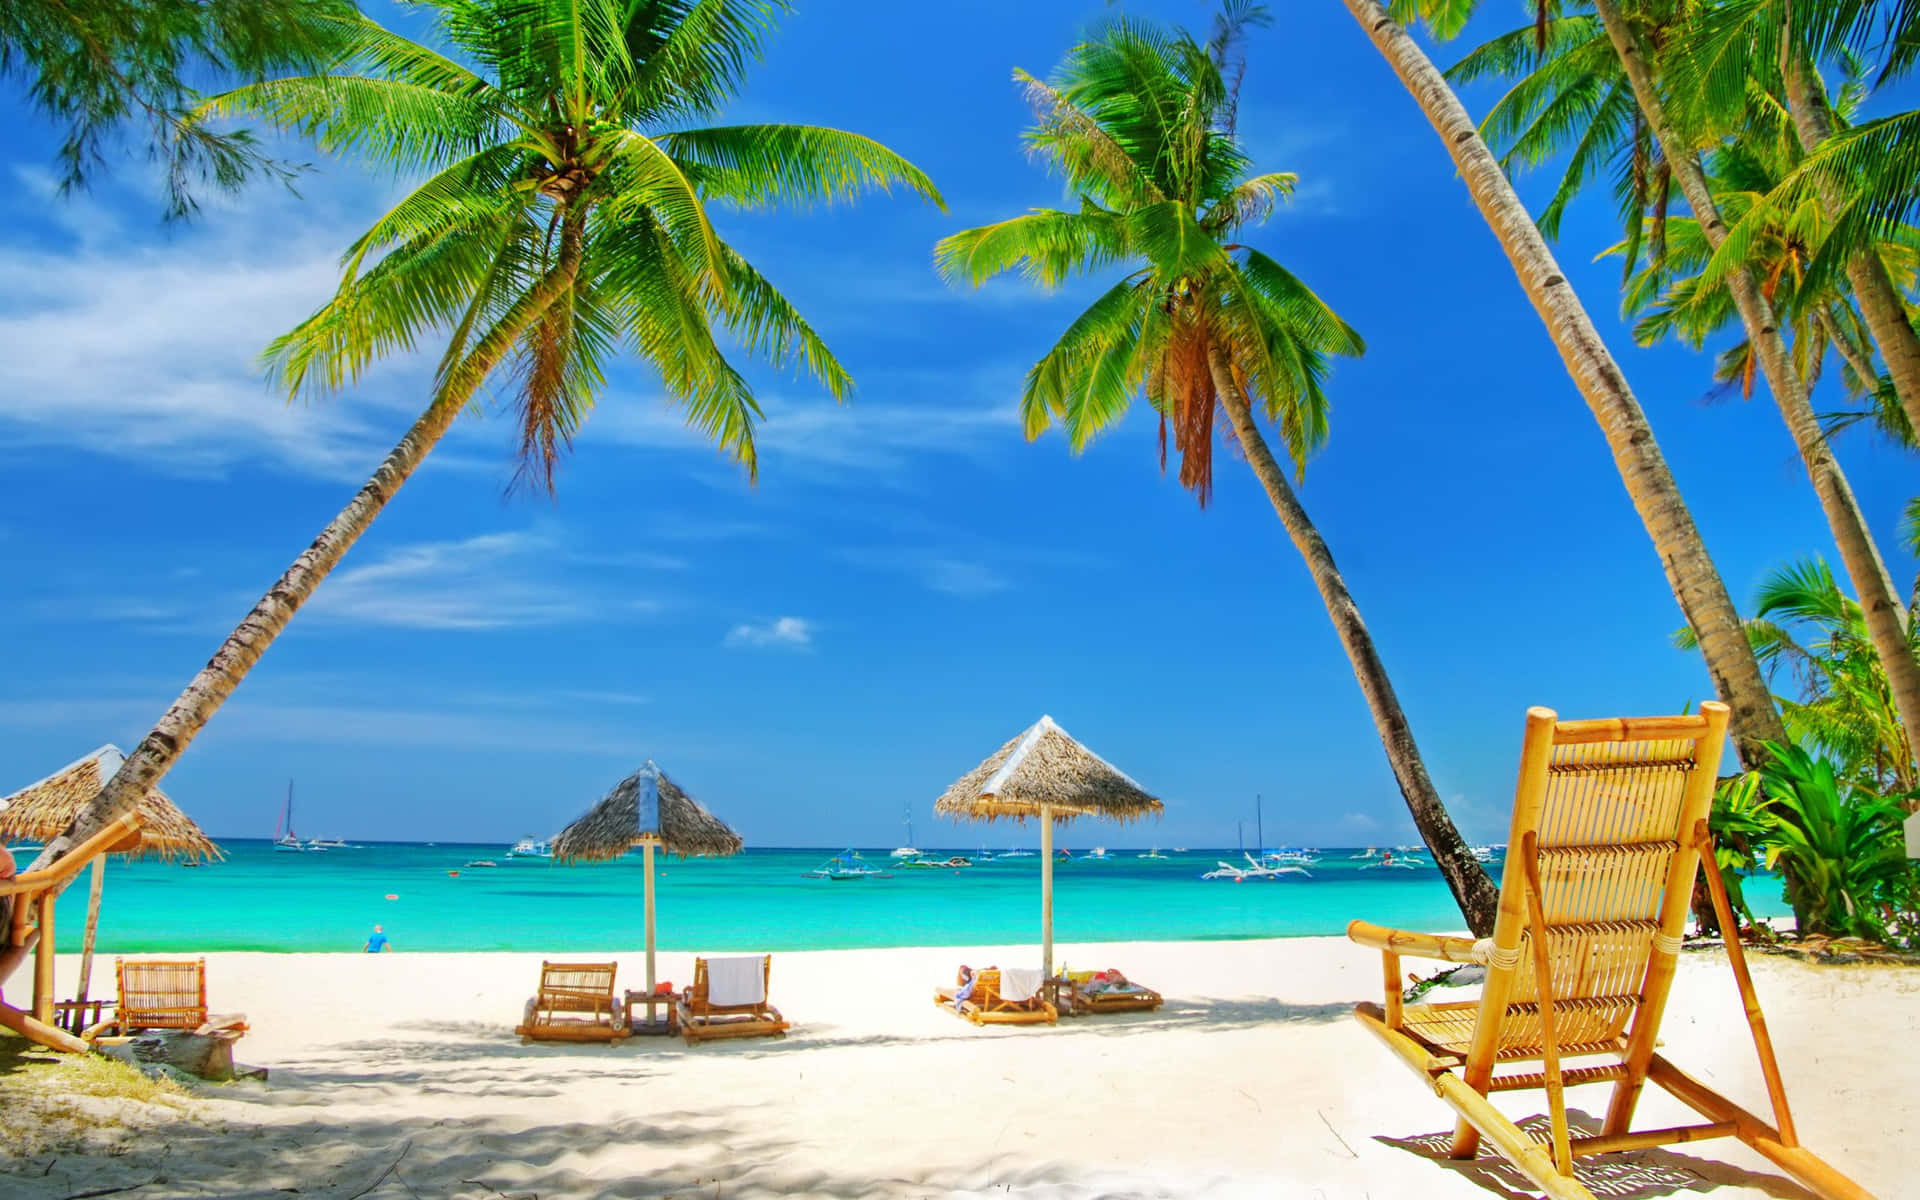 Impresionantevista De Una Tranquila Playa De Tailandia Durante Un Colorido Atardecer. Fondo de pantalla